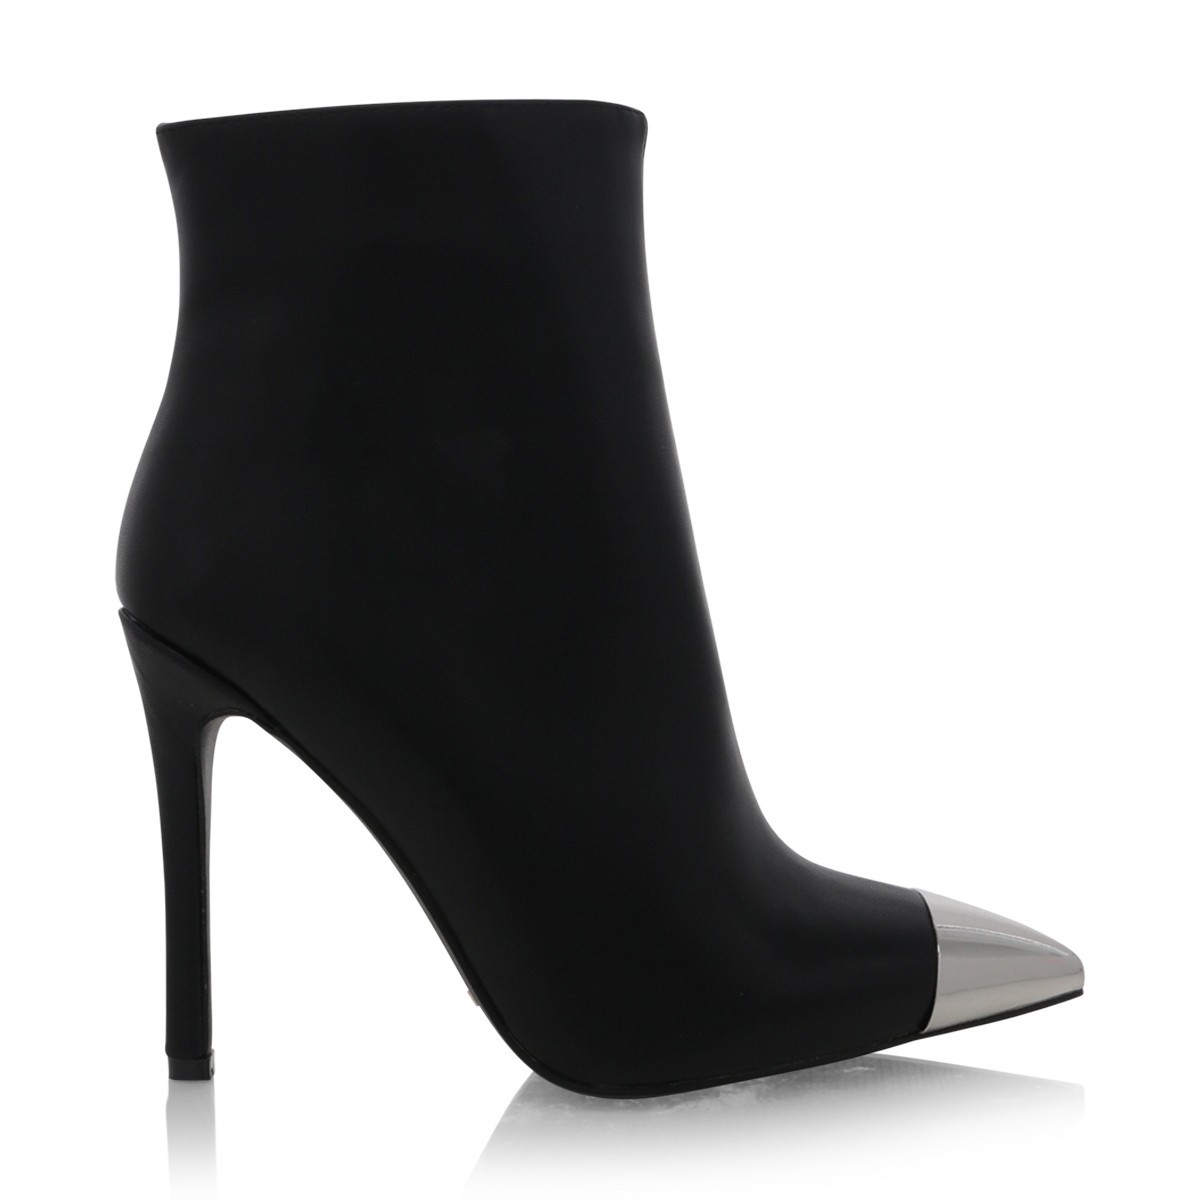 Doppio Black by Billini Shoes on Sale | ShoeSales